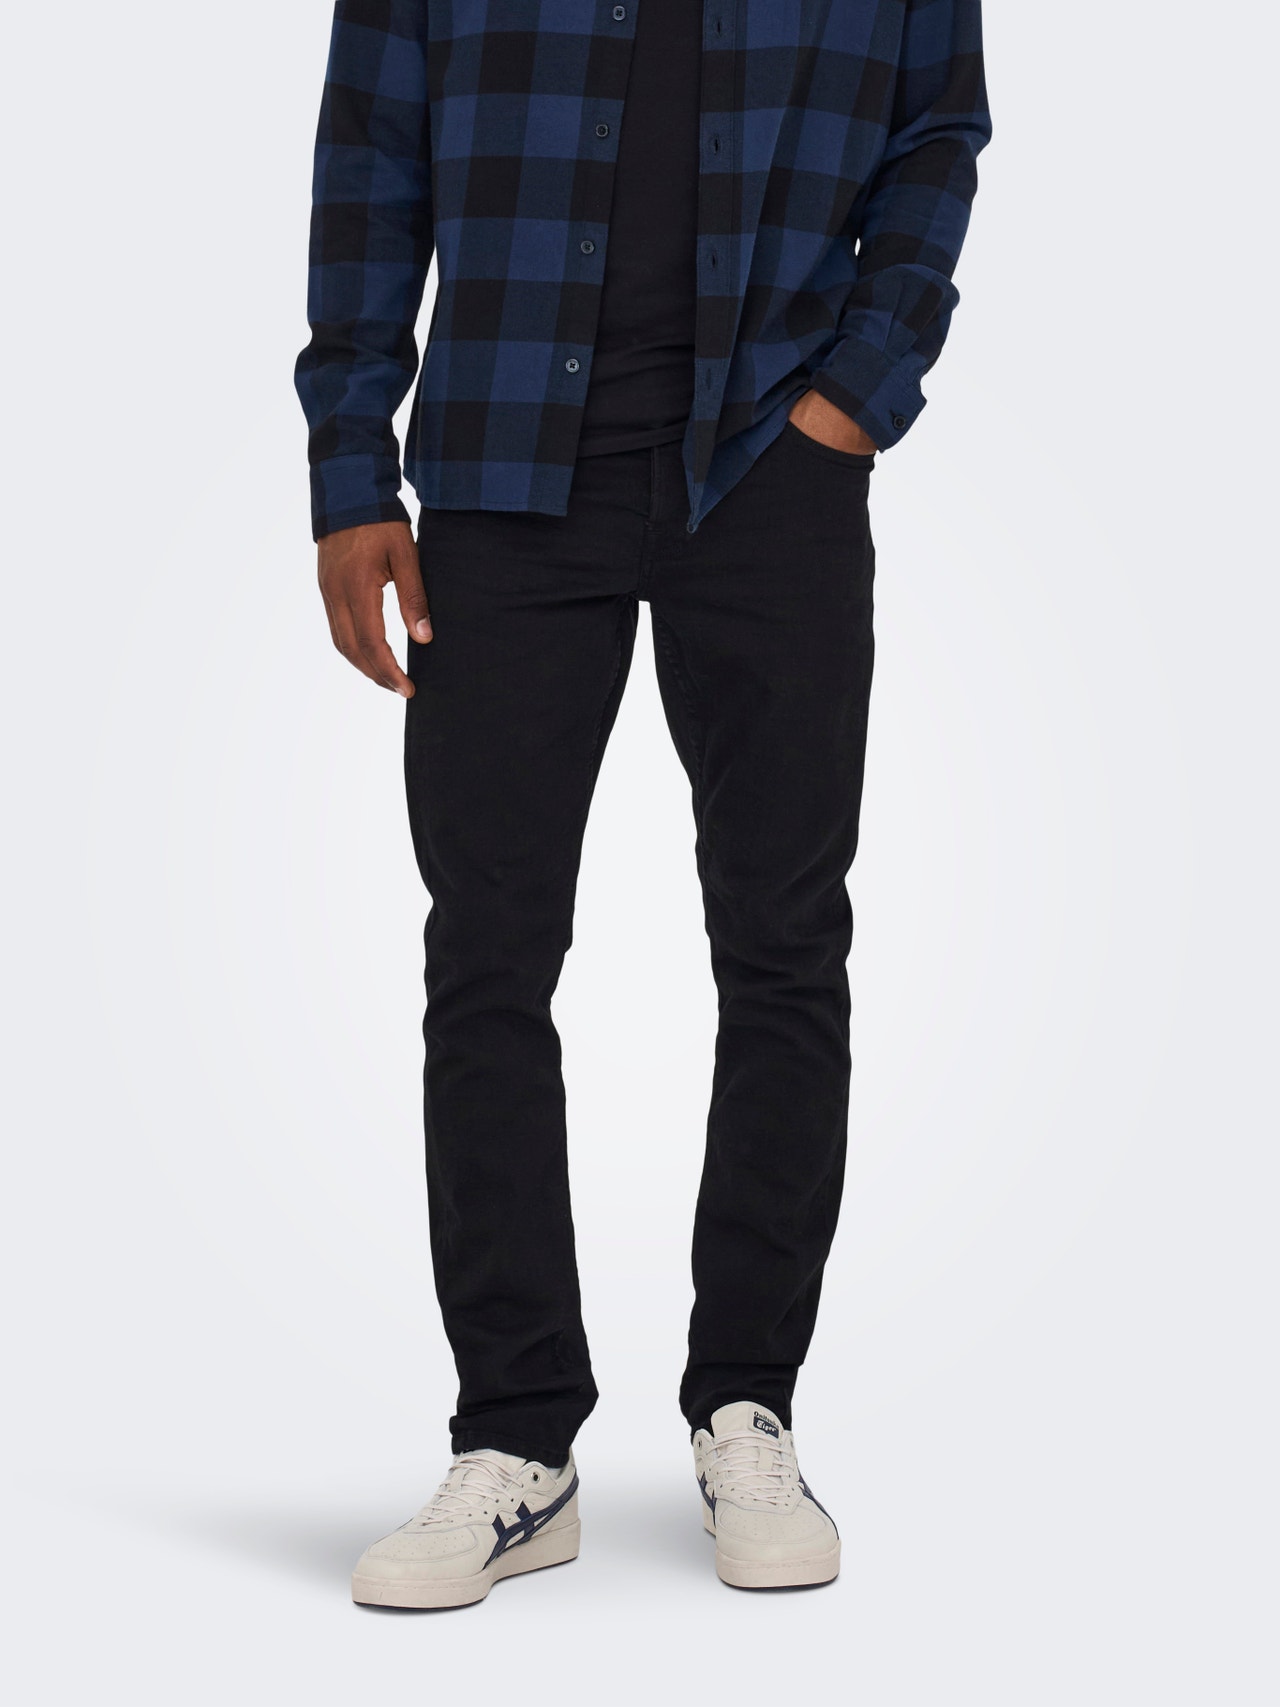 ONLY & SONS Jeans Slim Fit -Black Denim - 22010448